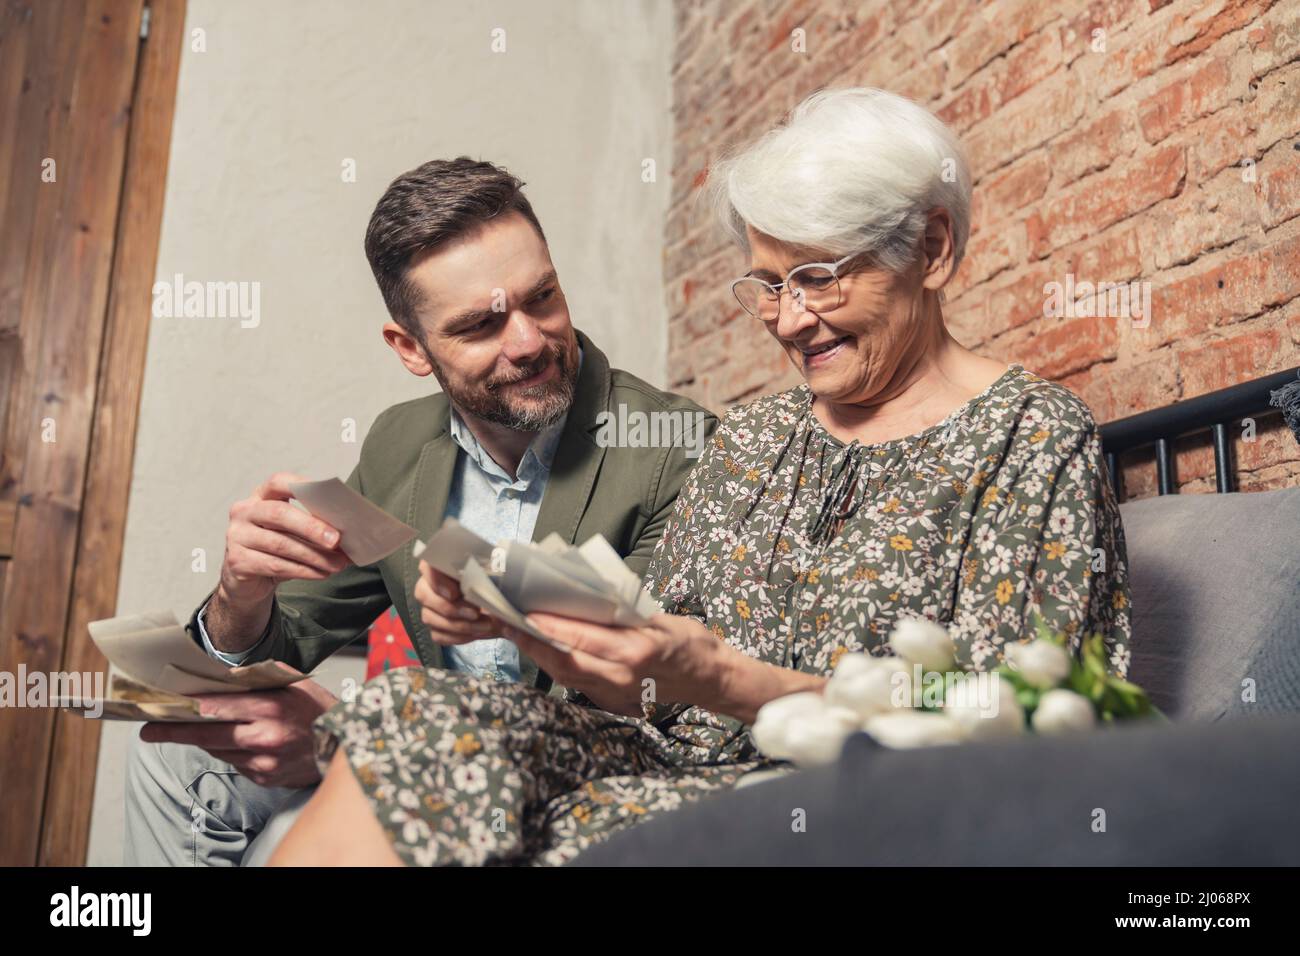 Vivace vecchia donna grigio-capelli pensa volentieri al passato e mostra il suo nipote adulto vecchie fotografie il giorno del nonno. Foto di alta qualità Foto Stock